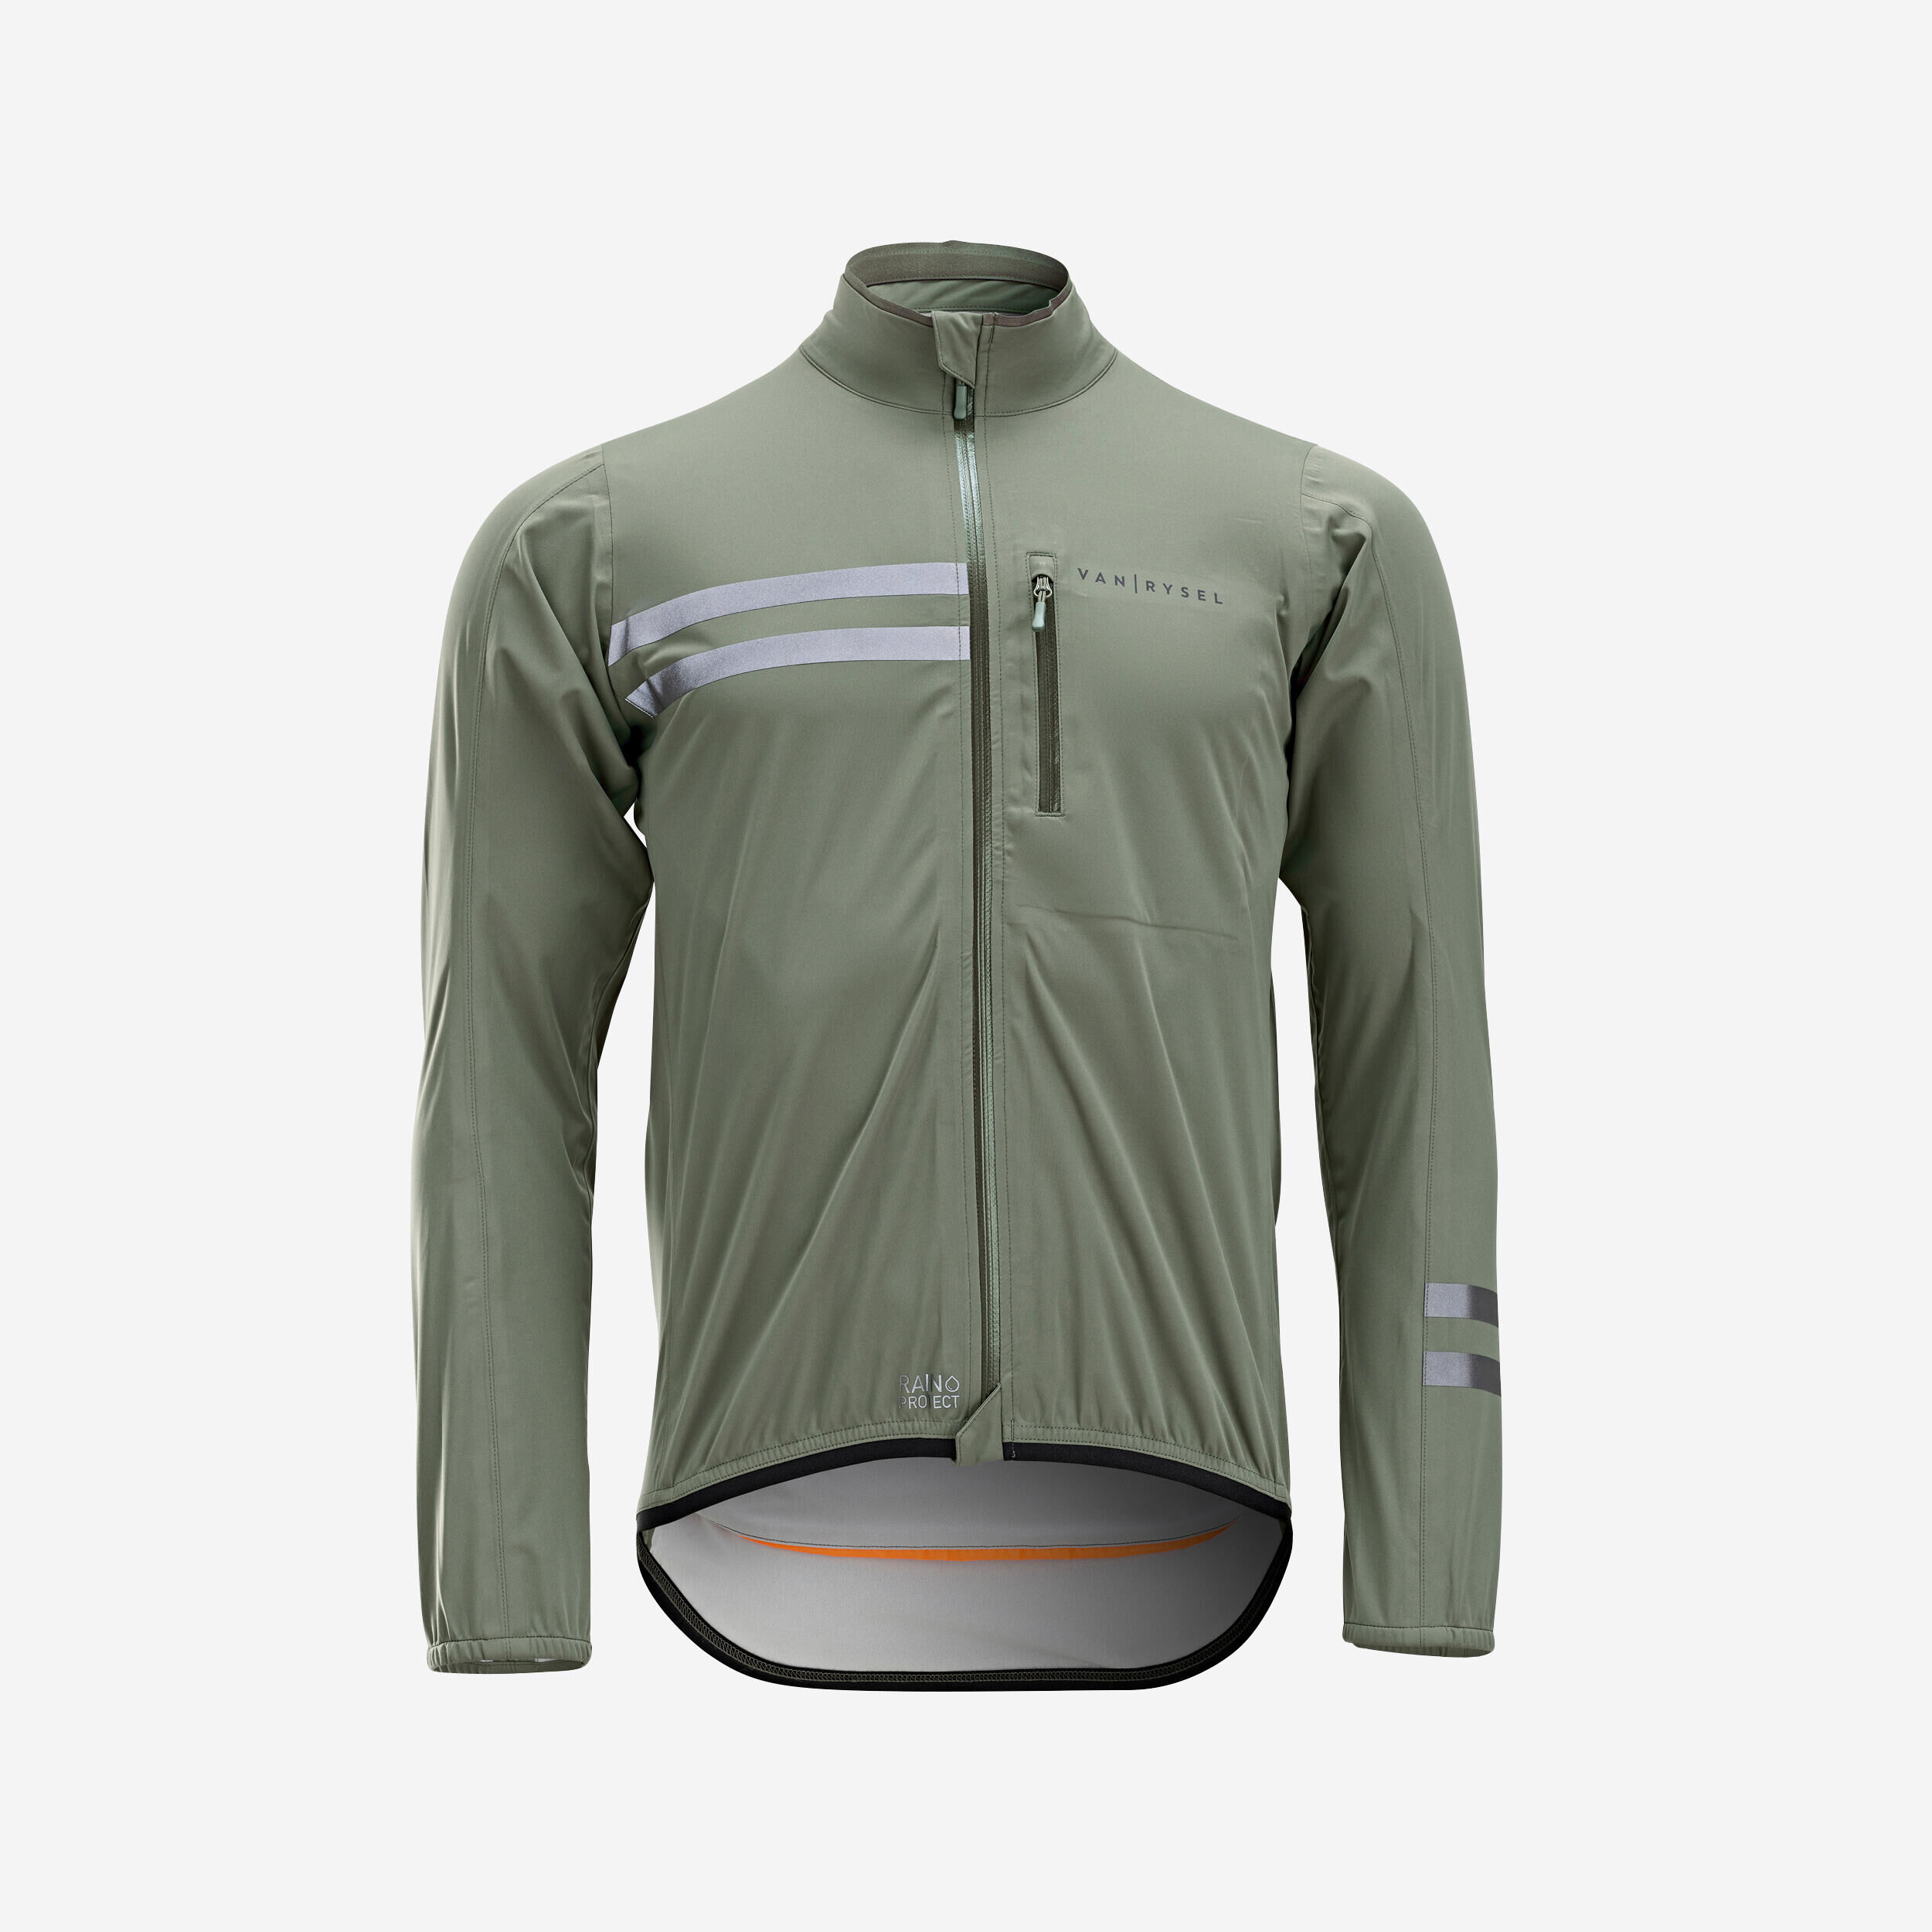 VAN RYSEL Men's Long-Sleeved Showerproof Road Cycling Jacket RC 500 - Khaki